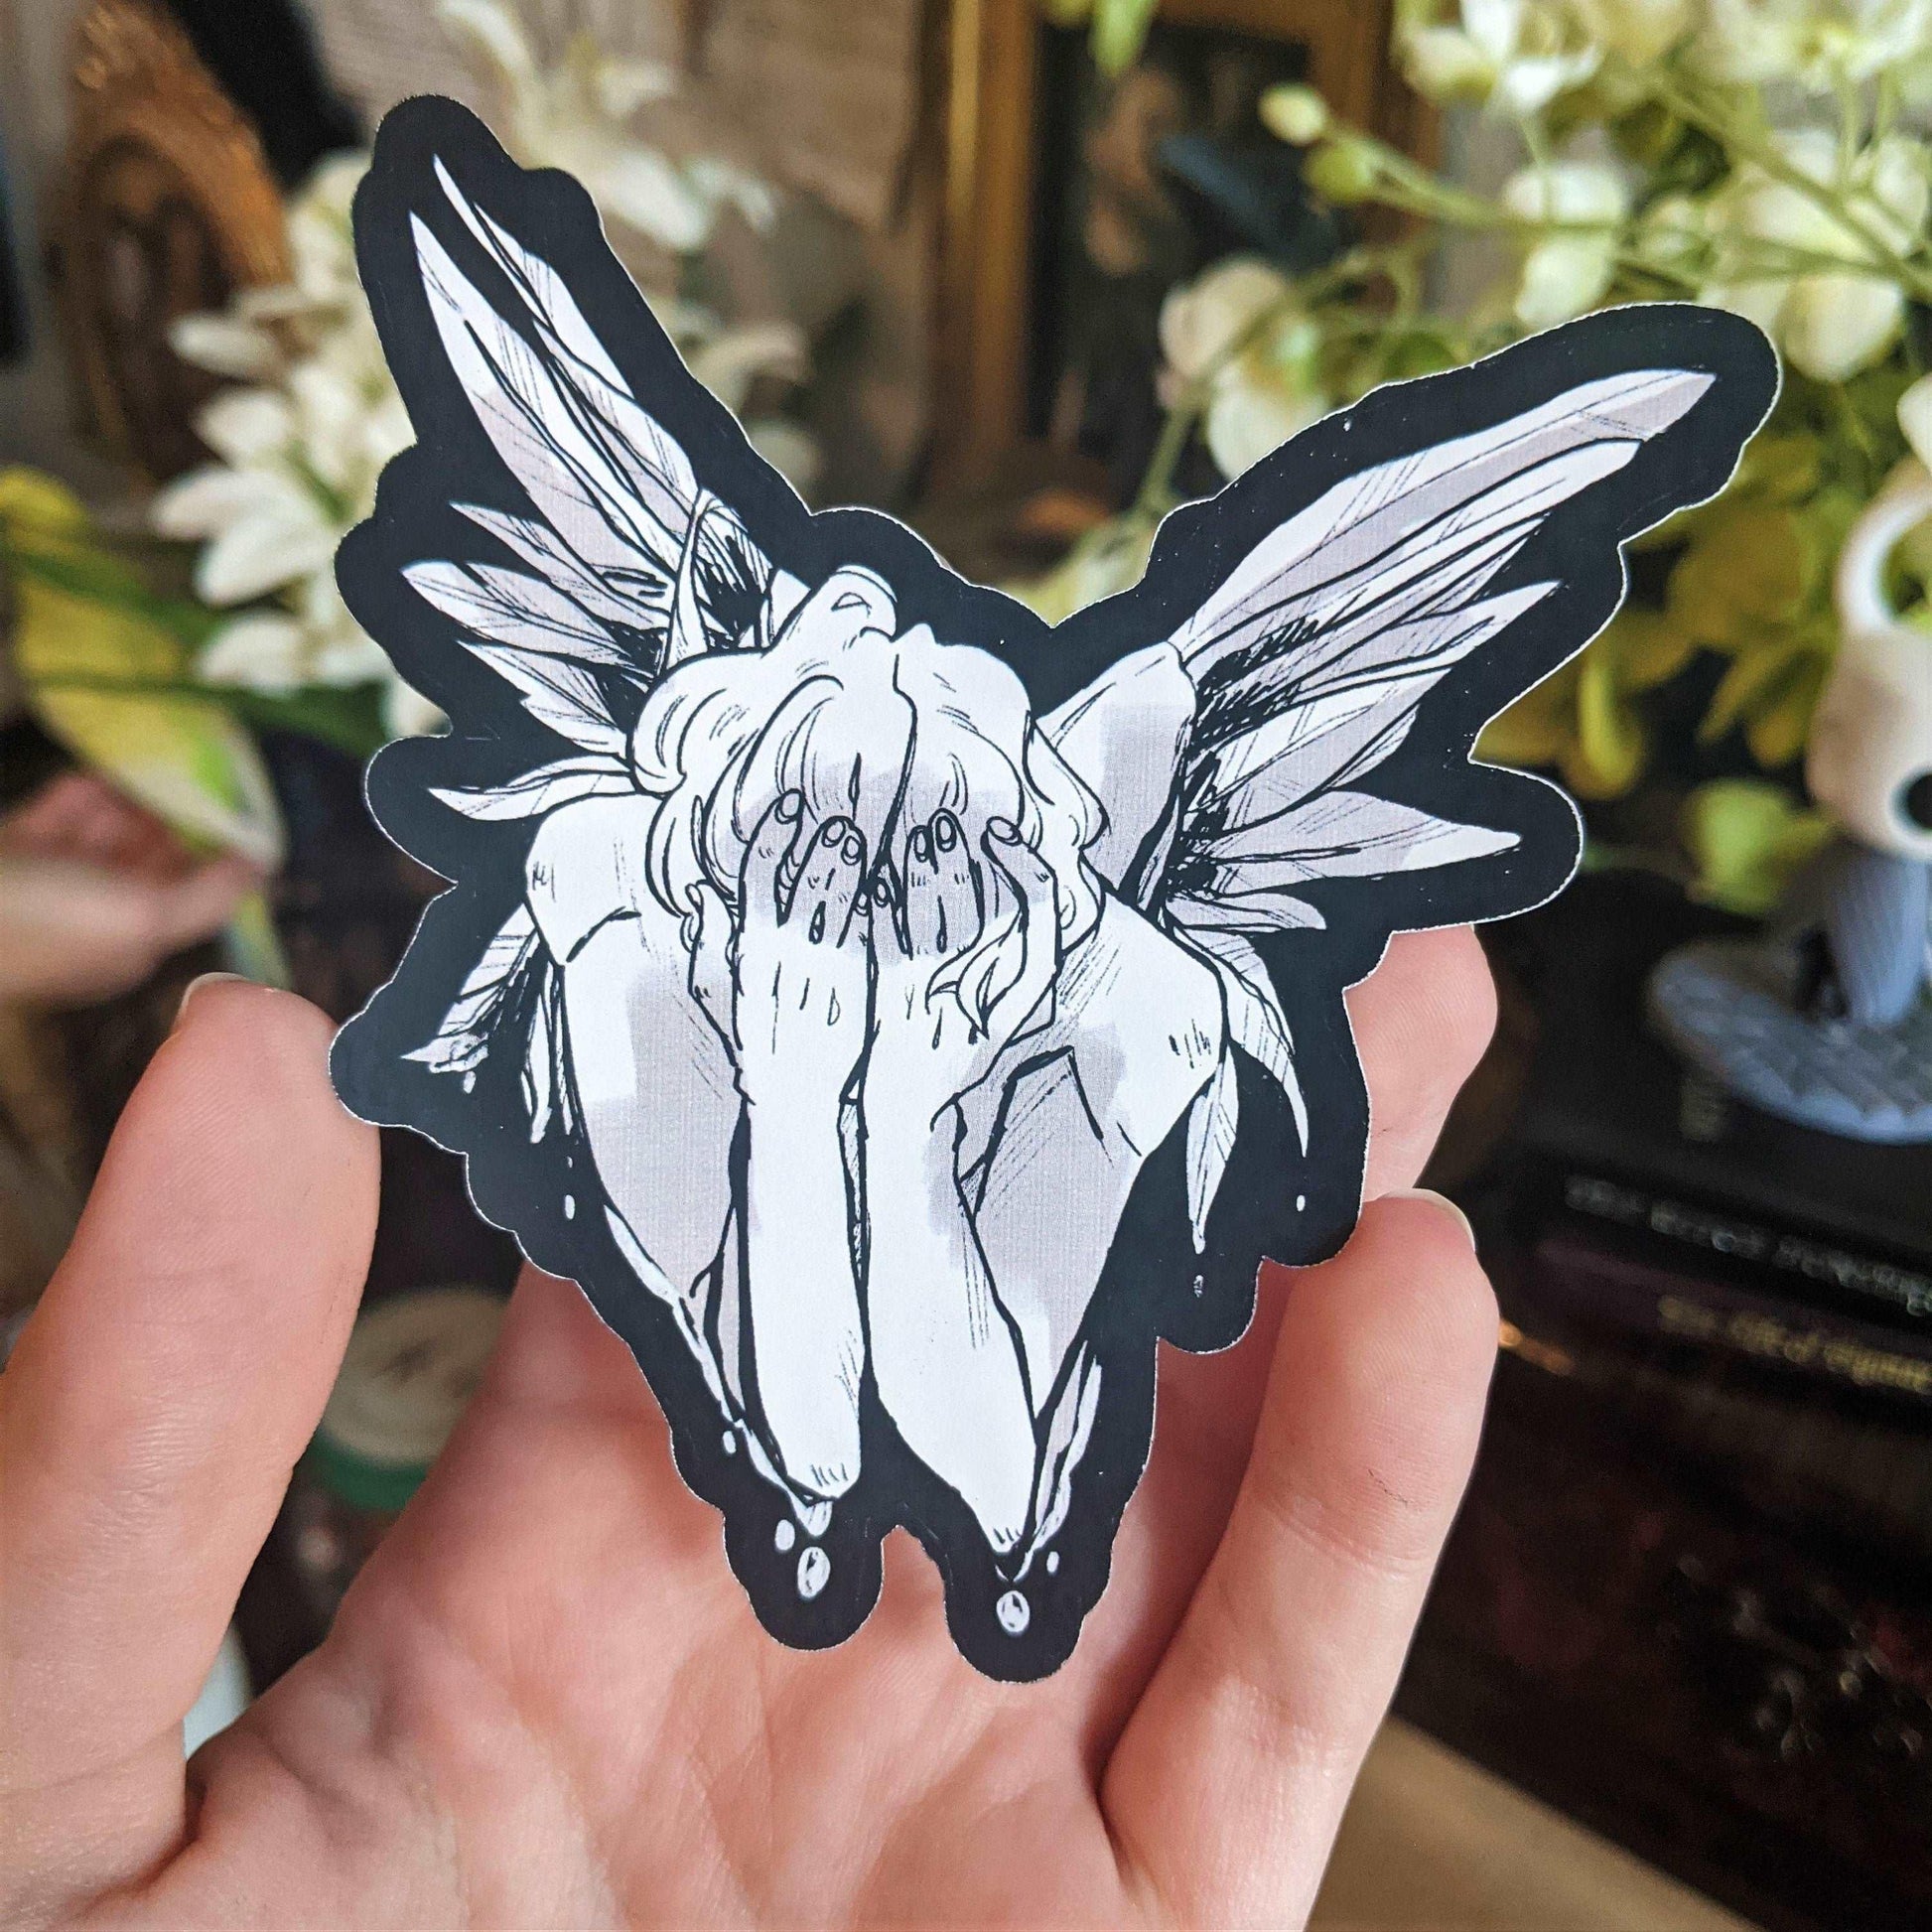 Fallen Angel Sticker